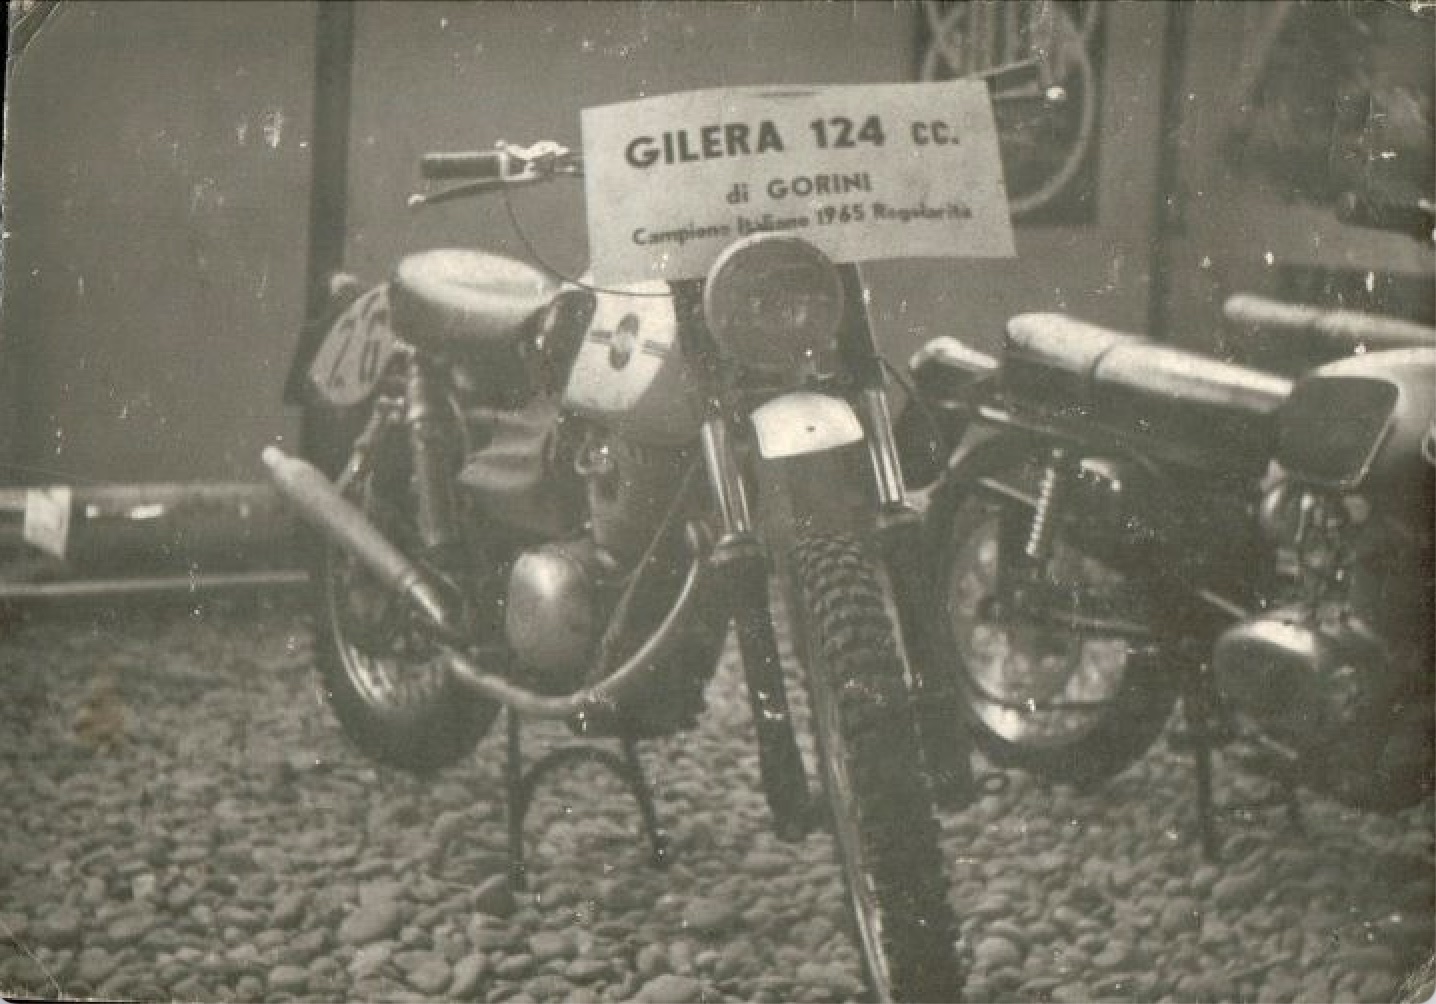 Moto Gilera 124cc di Luigi Gorini, vincitrice del Campionato Italiano, esposta alla fiera di Milano